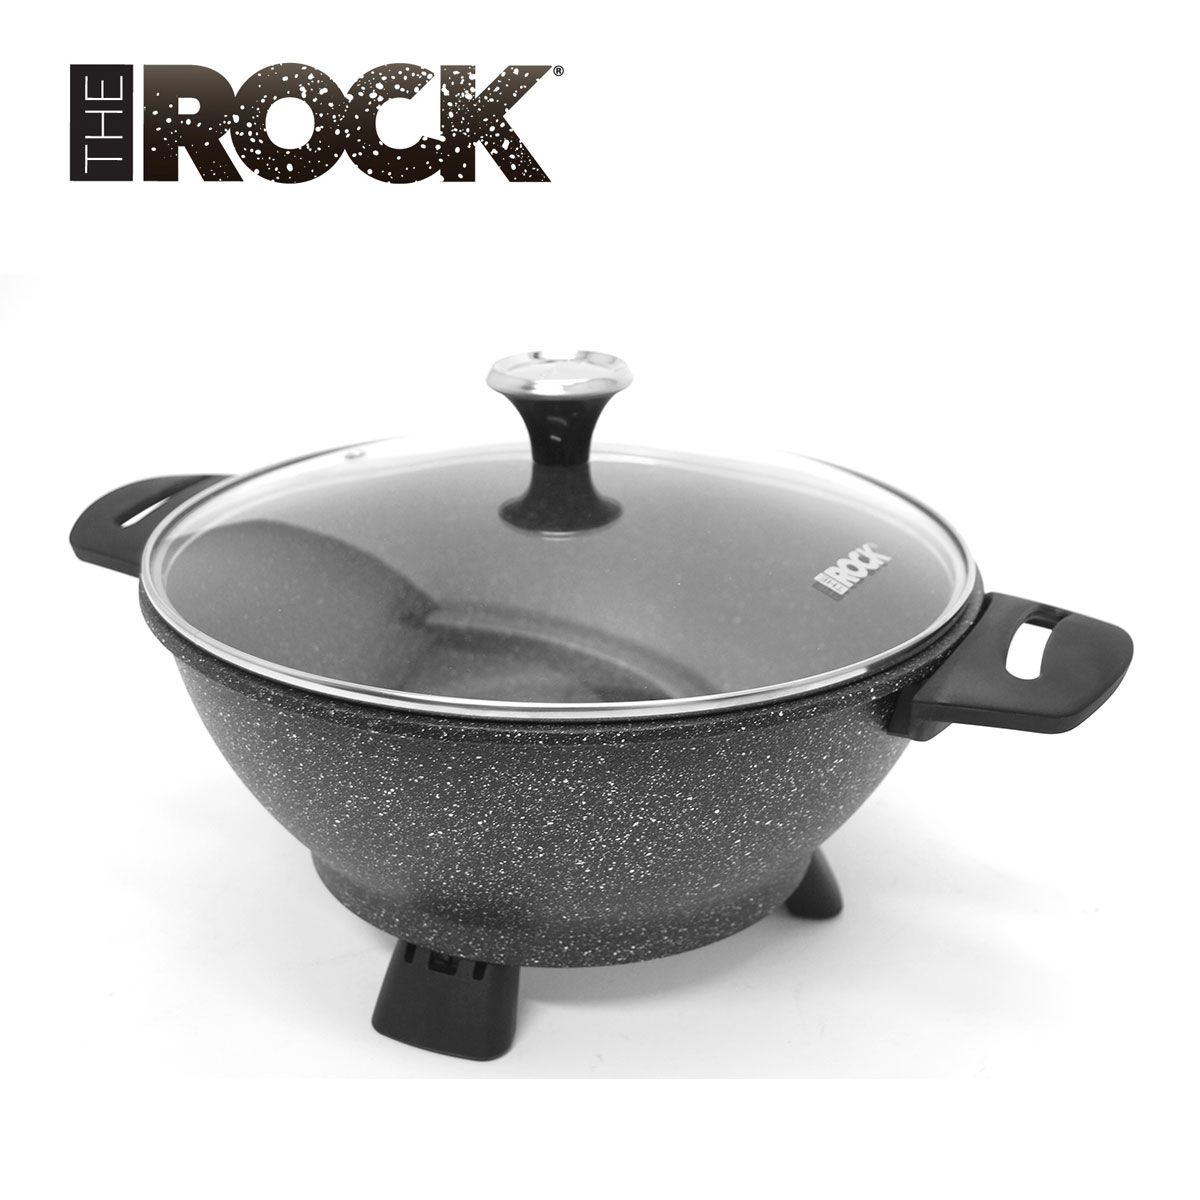 Starfrit - The Rock, Multi-casserole électrique. Colour: red